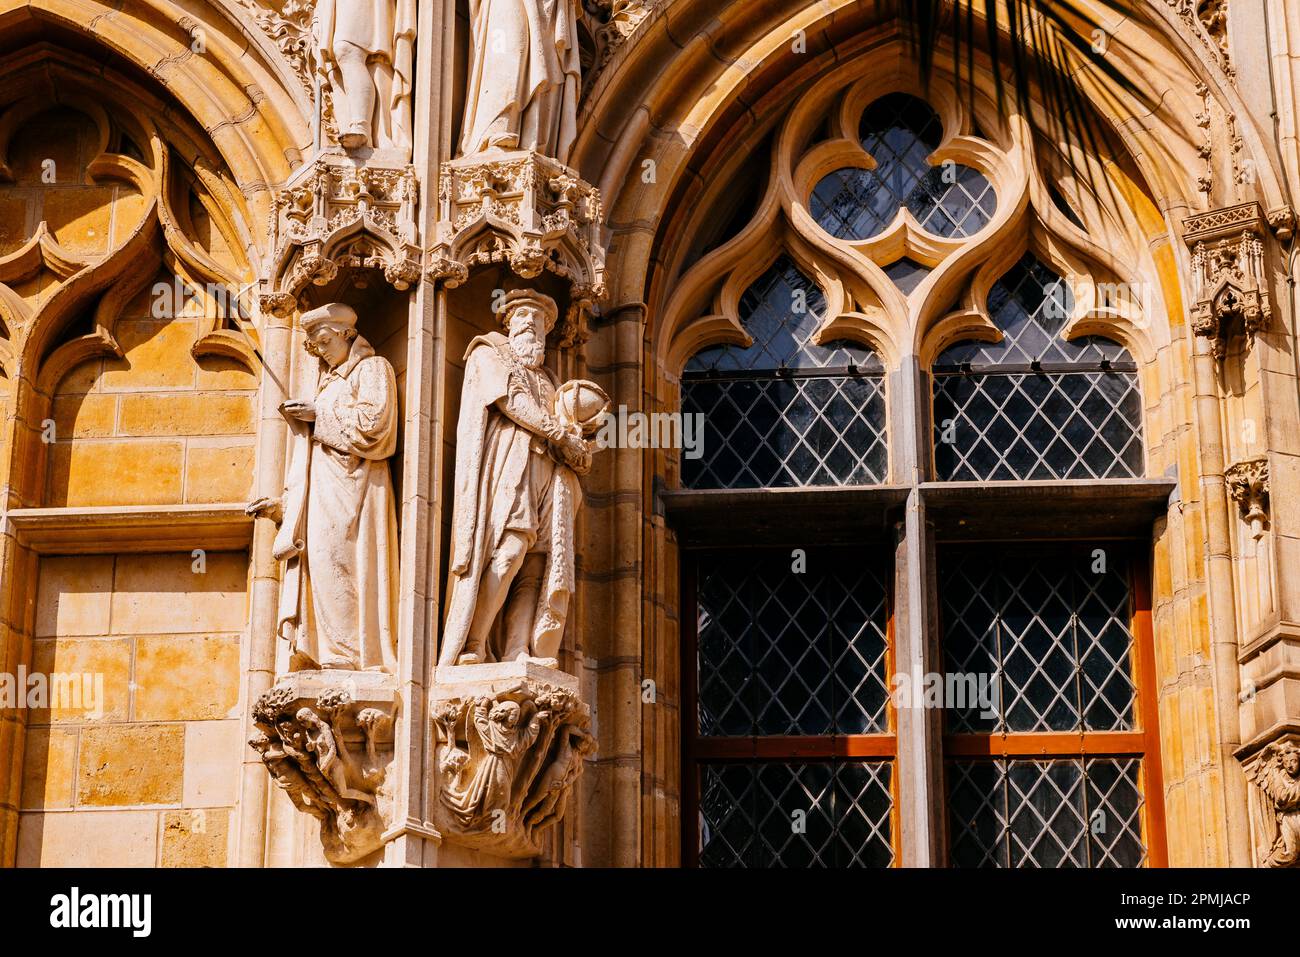 Statues de Gerardus Mercator (R), géographe, cosmographe et cartographe datant du 16th siècle, et de Nicolas Cleynaerts (L), grammarien flamand Banque D'Images